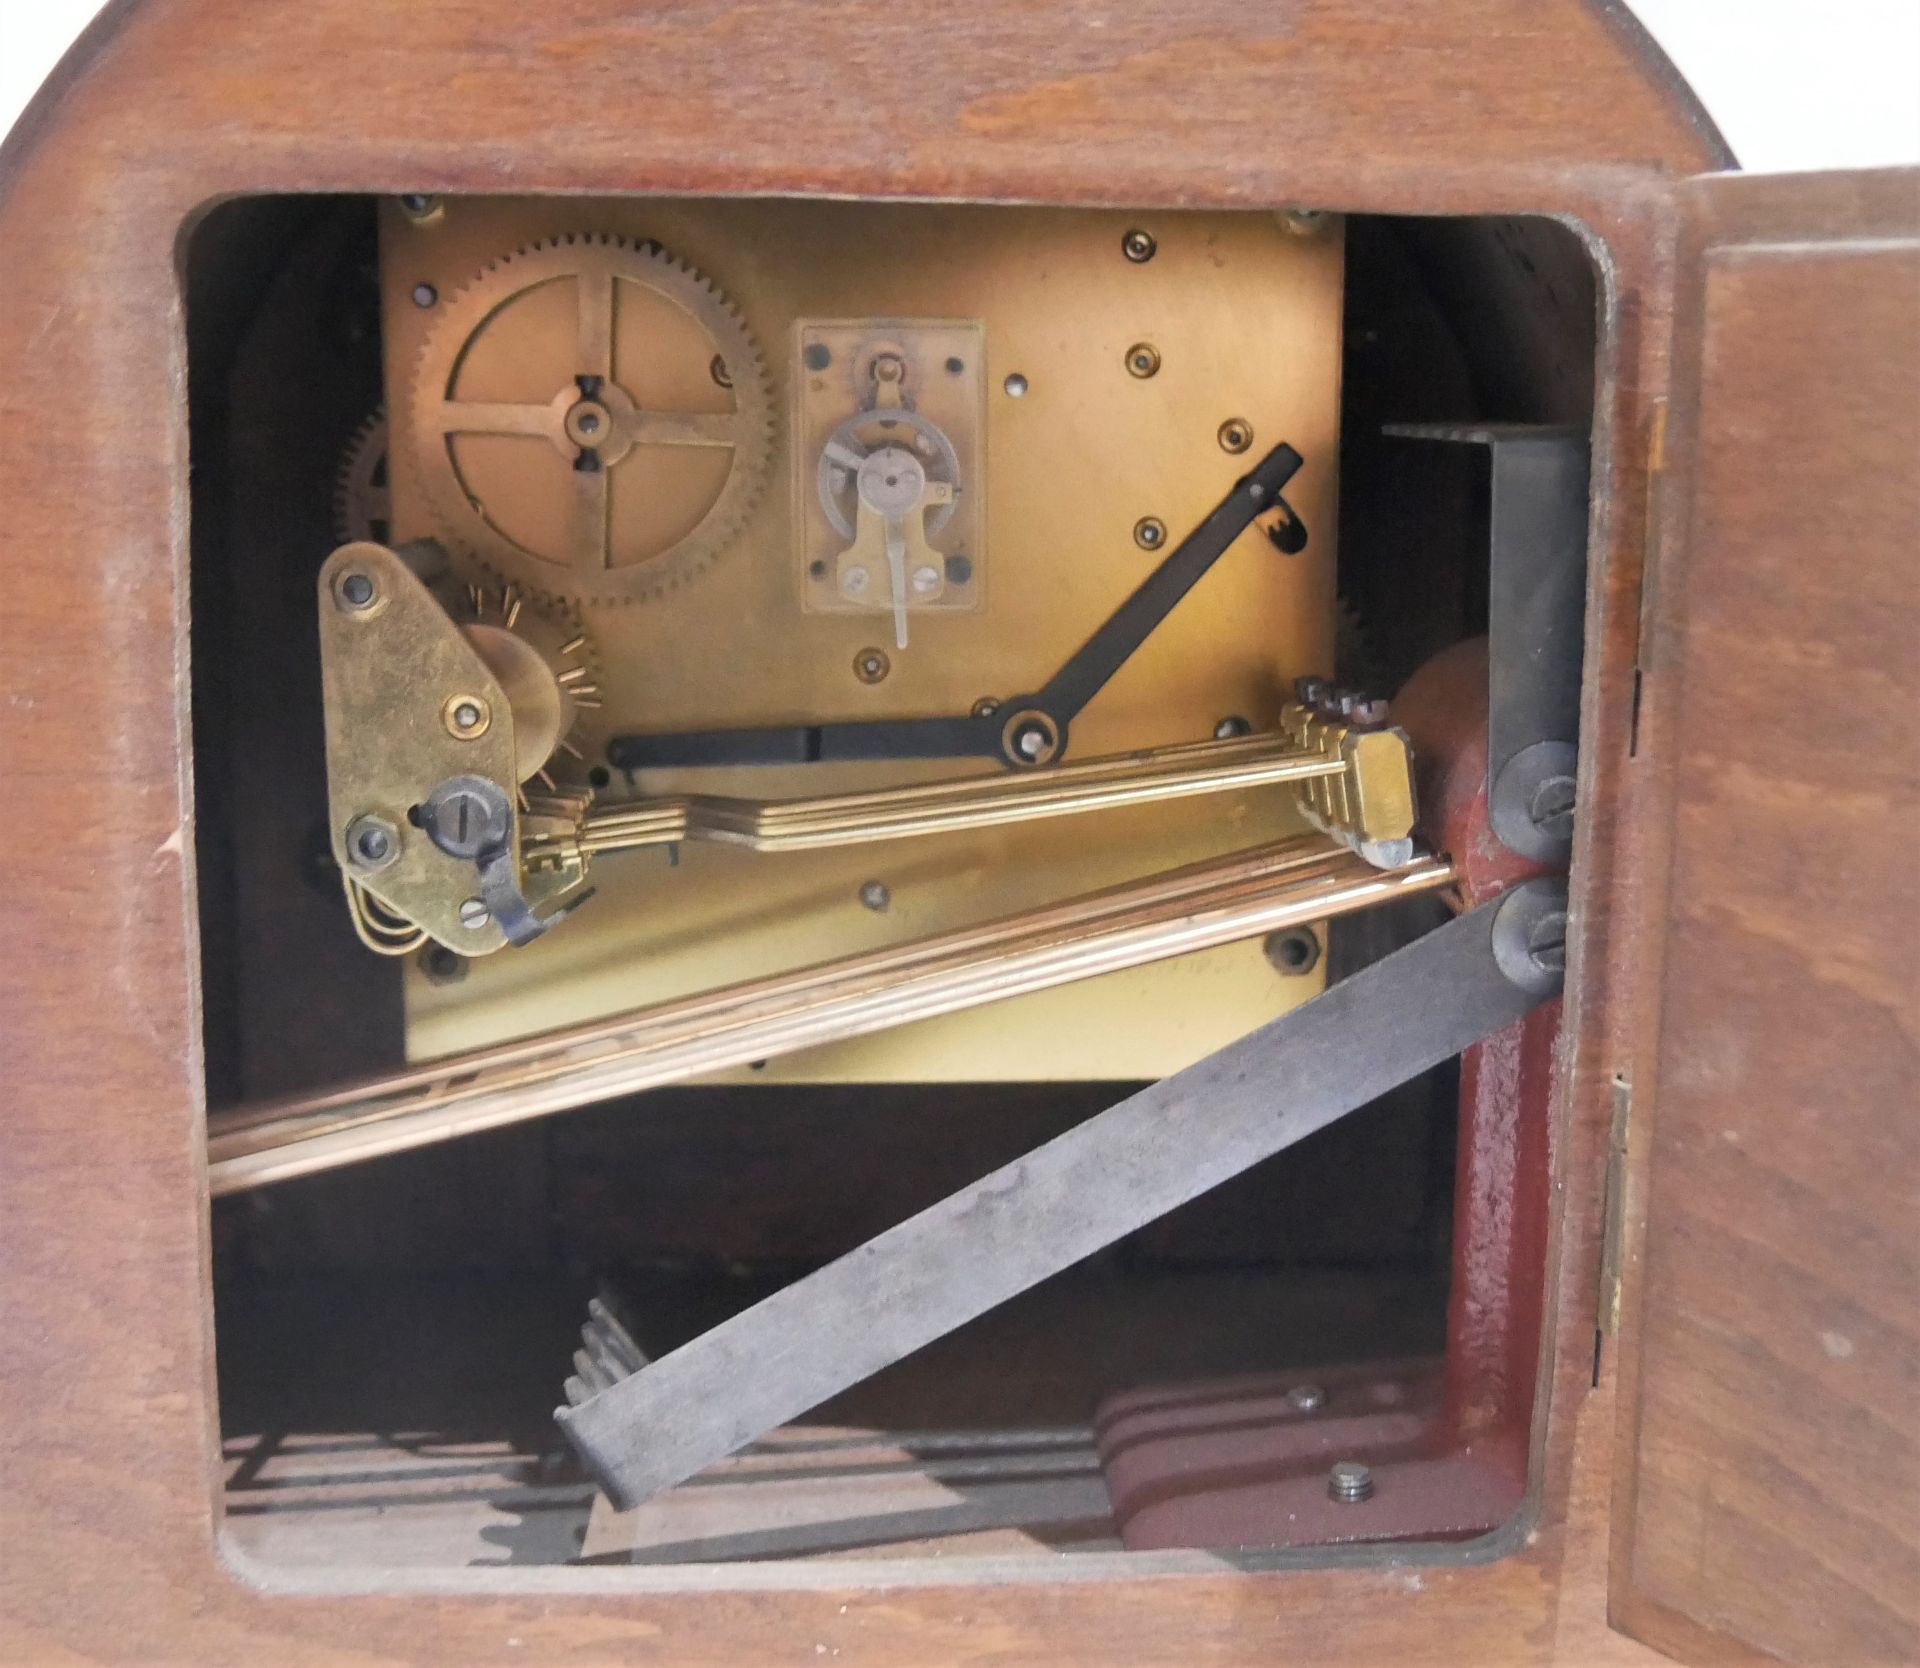 Kaminuhr / Tischuhr von Juwela mit Schlüssel. Länge ca. 54,5 cm, Höhe ca. 19,5 cm - Image 2 of 3